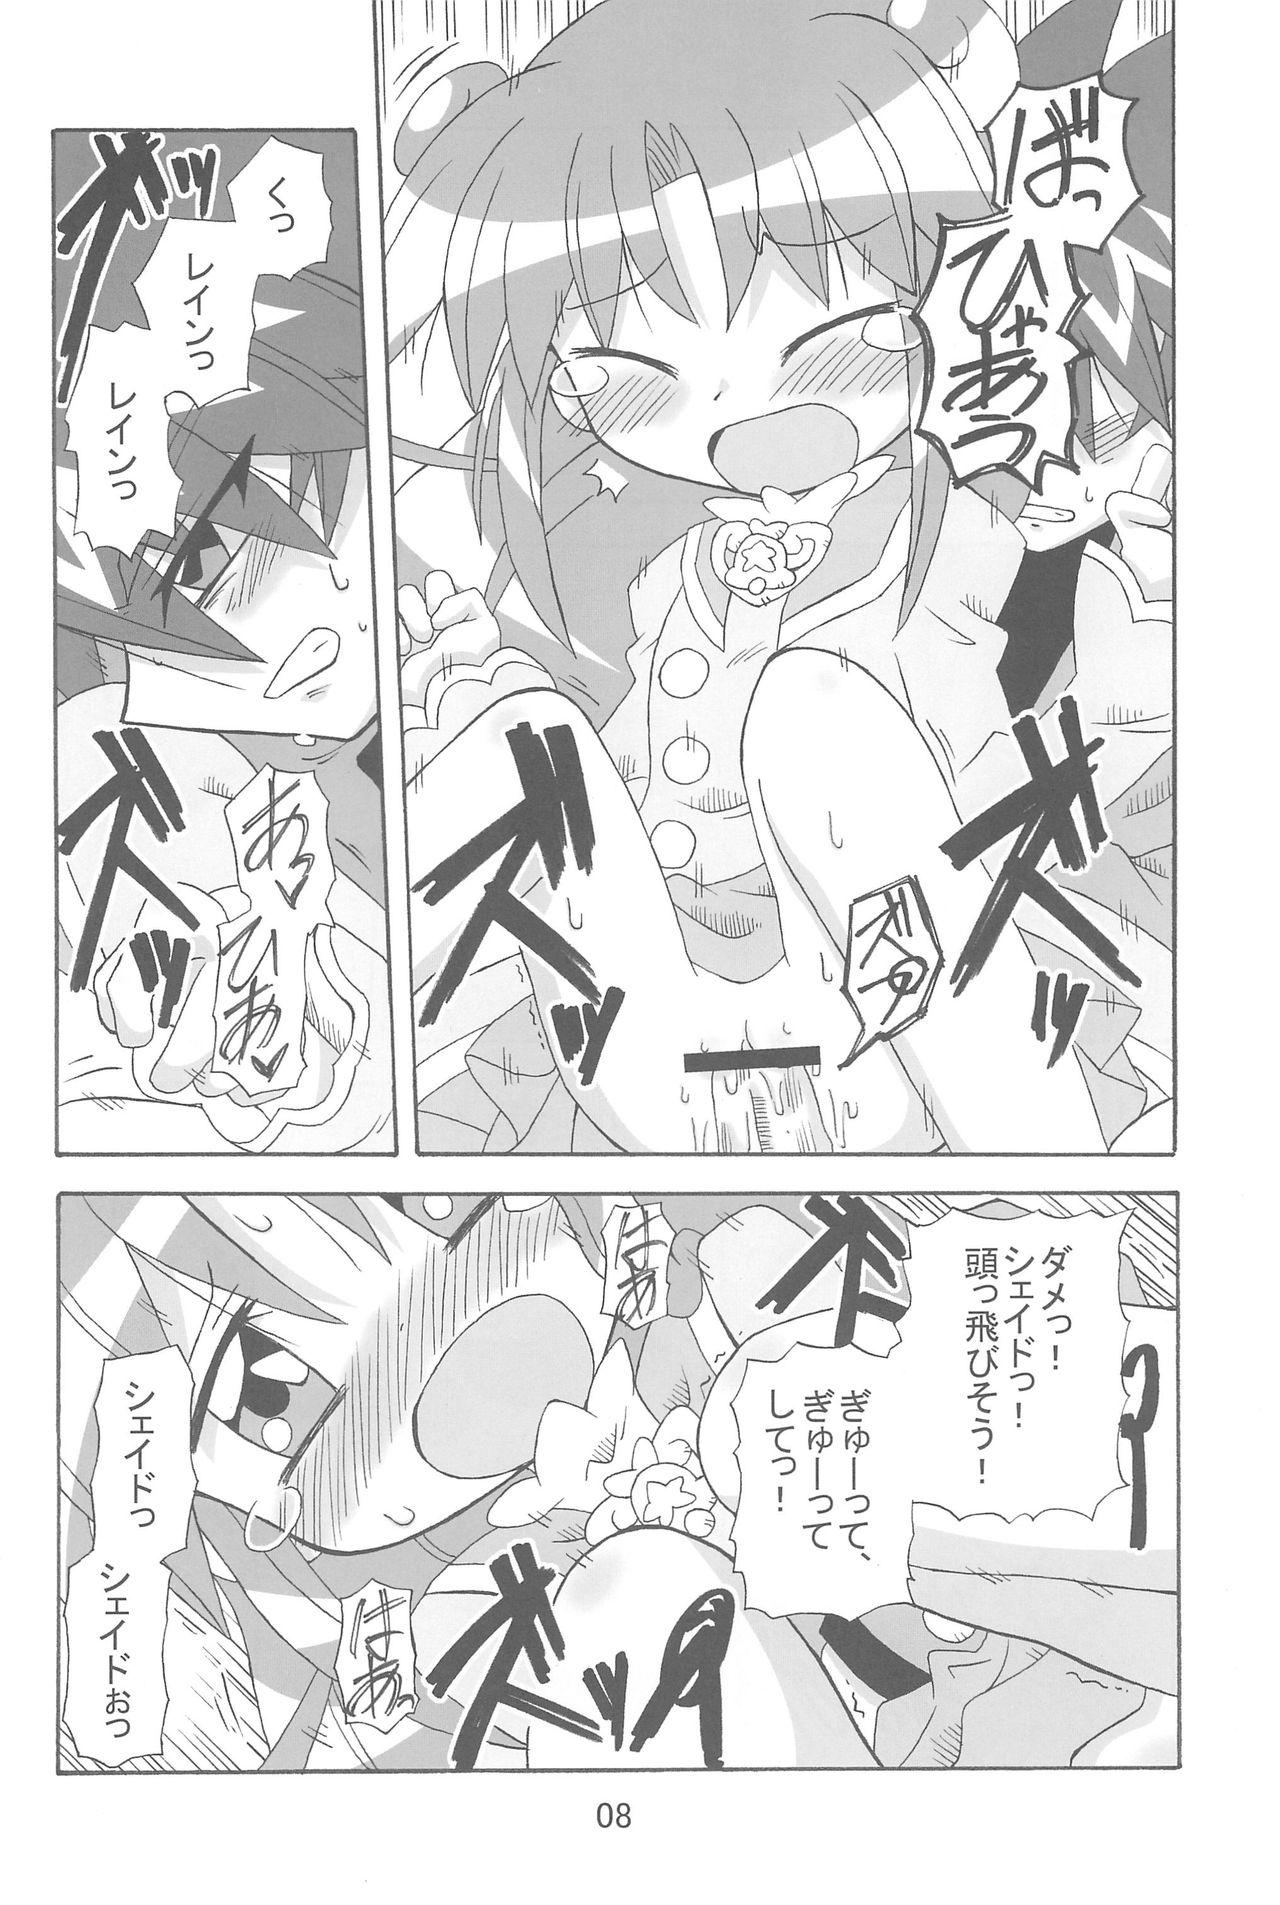 Swinger Strawberry x Strawberry - Fushigiboshi no futagohime Dicksucking - Page 8